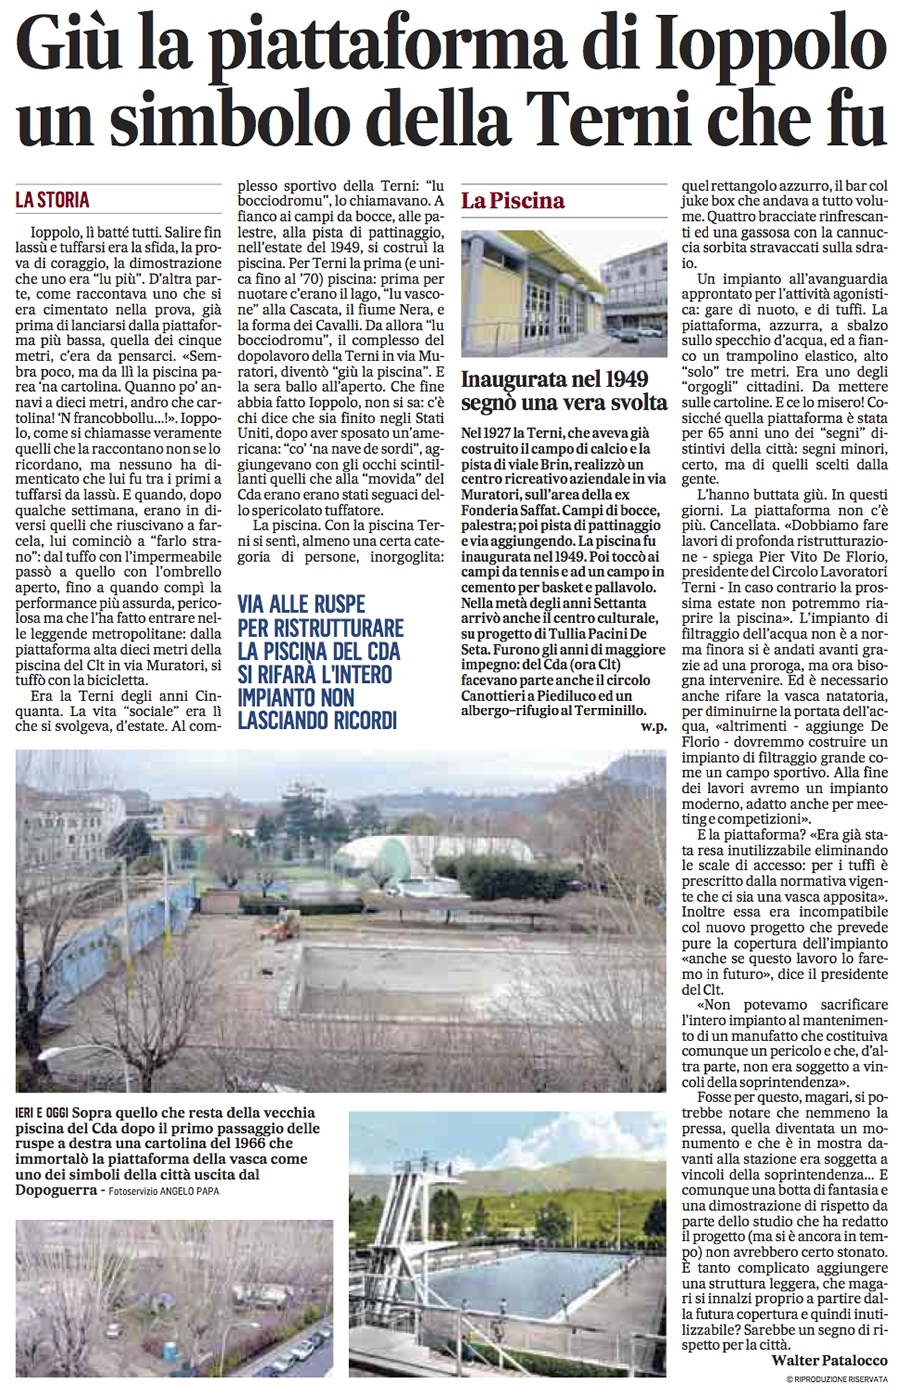 Il Messaggero 18/01/2014